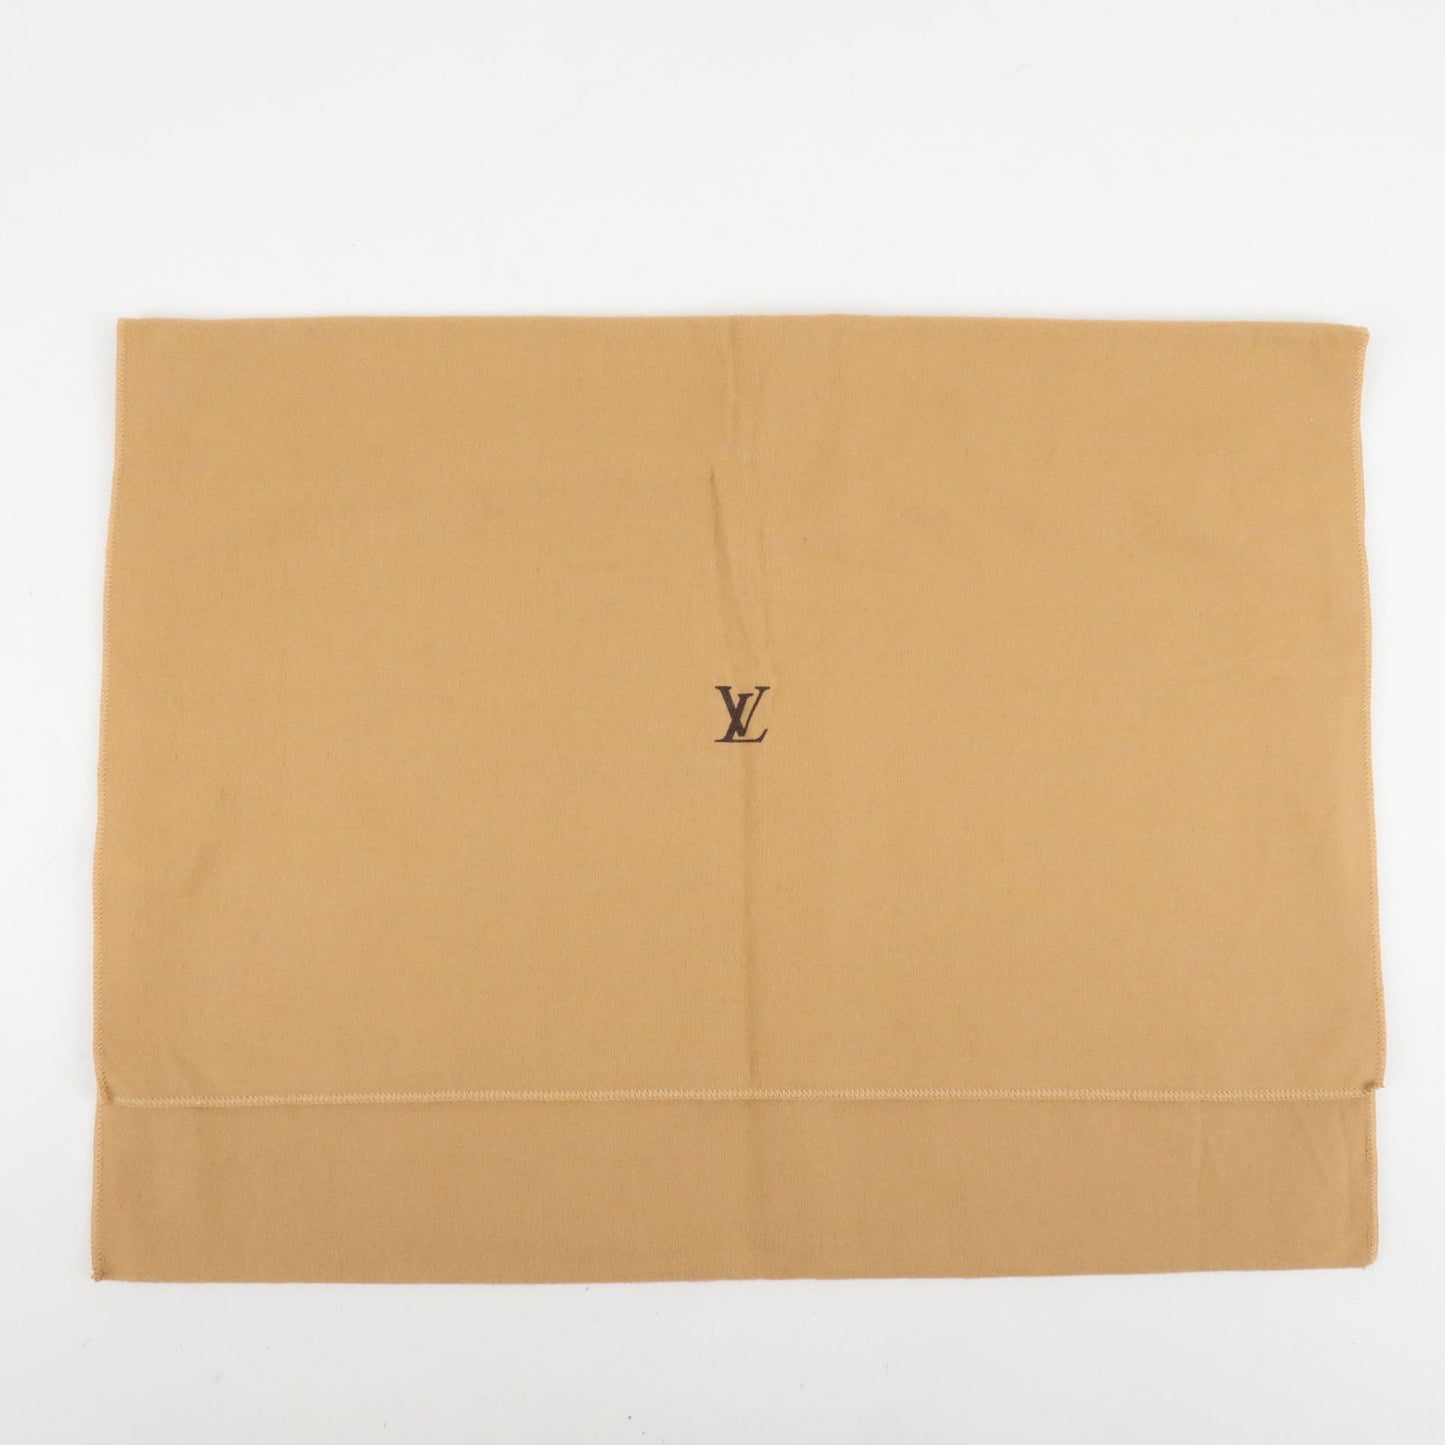 Louis Vuitton Set of 10 Dust Bag Beige